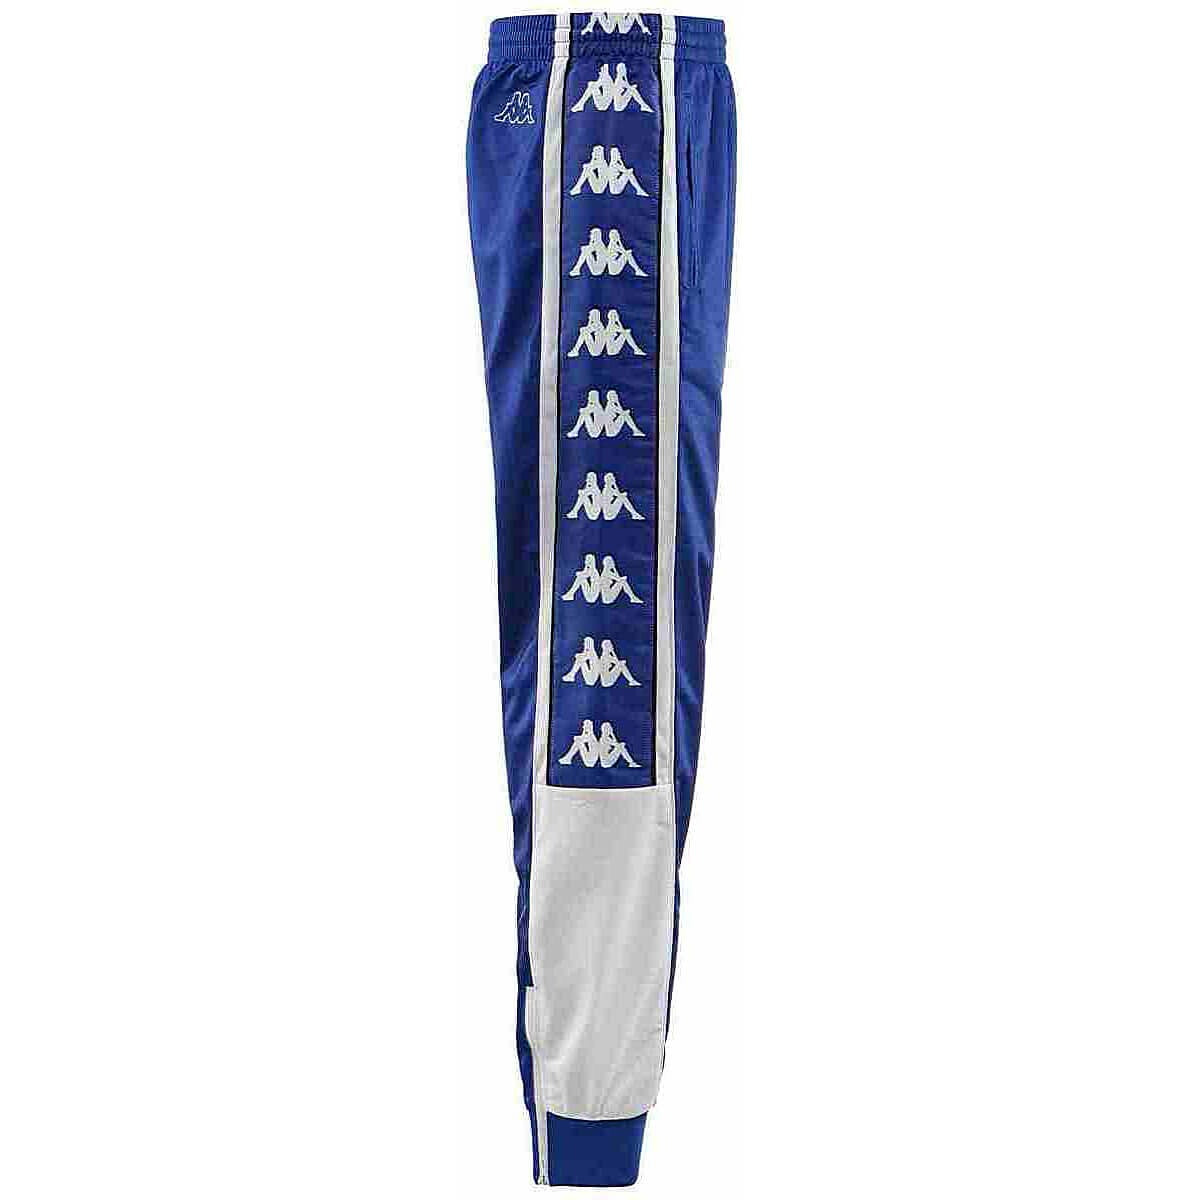 Kappa Alen 222 Banda 10 Pants Blue Royal/White